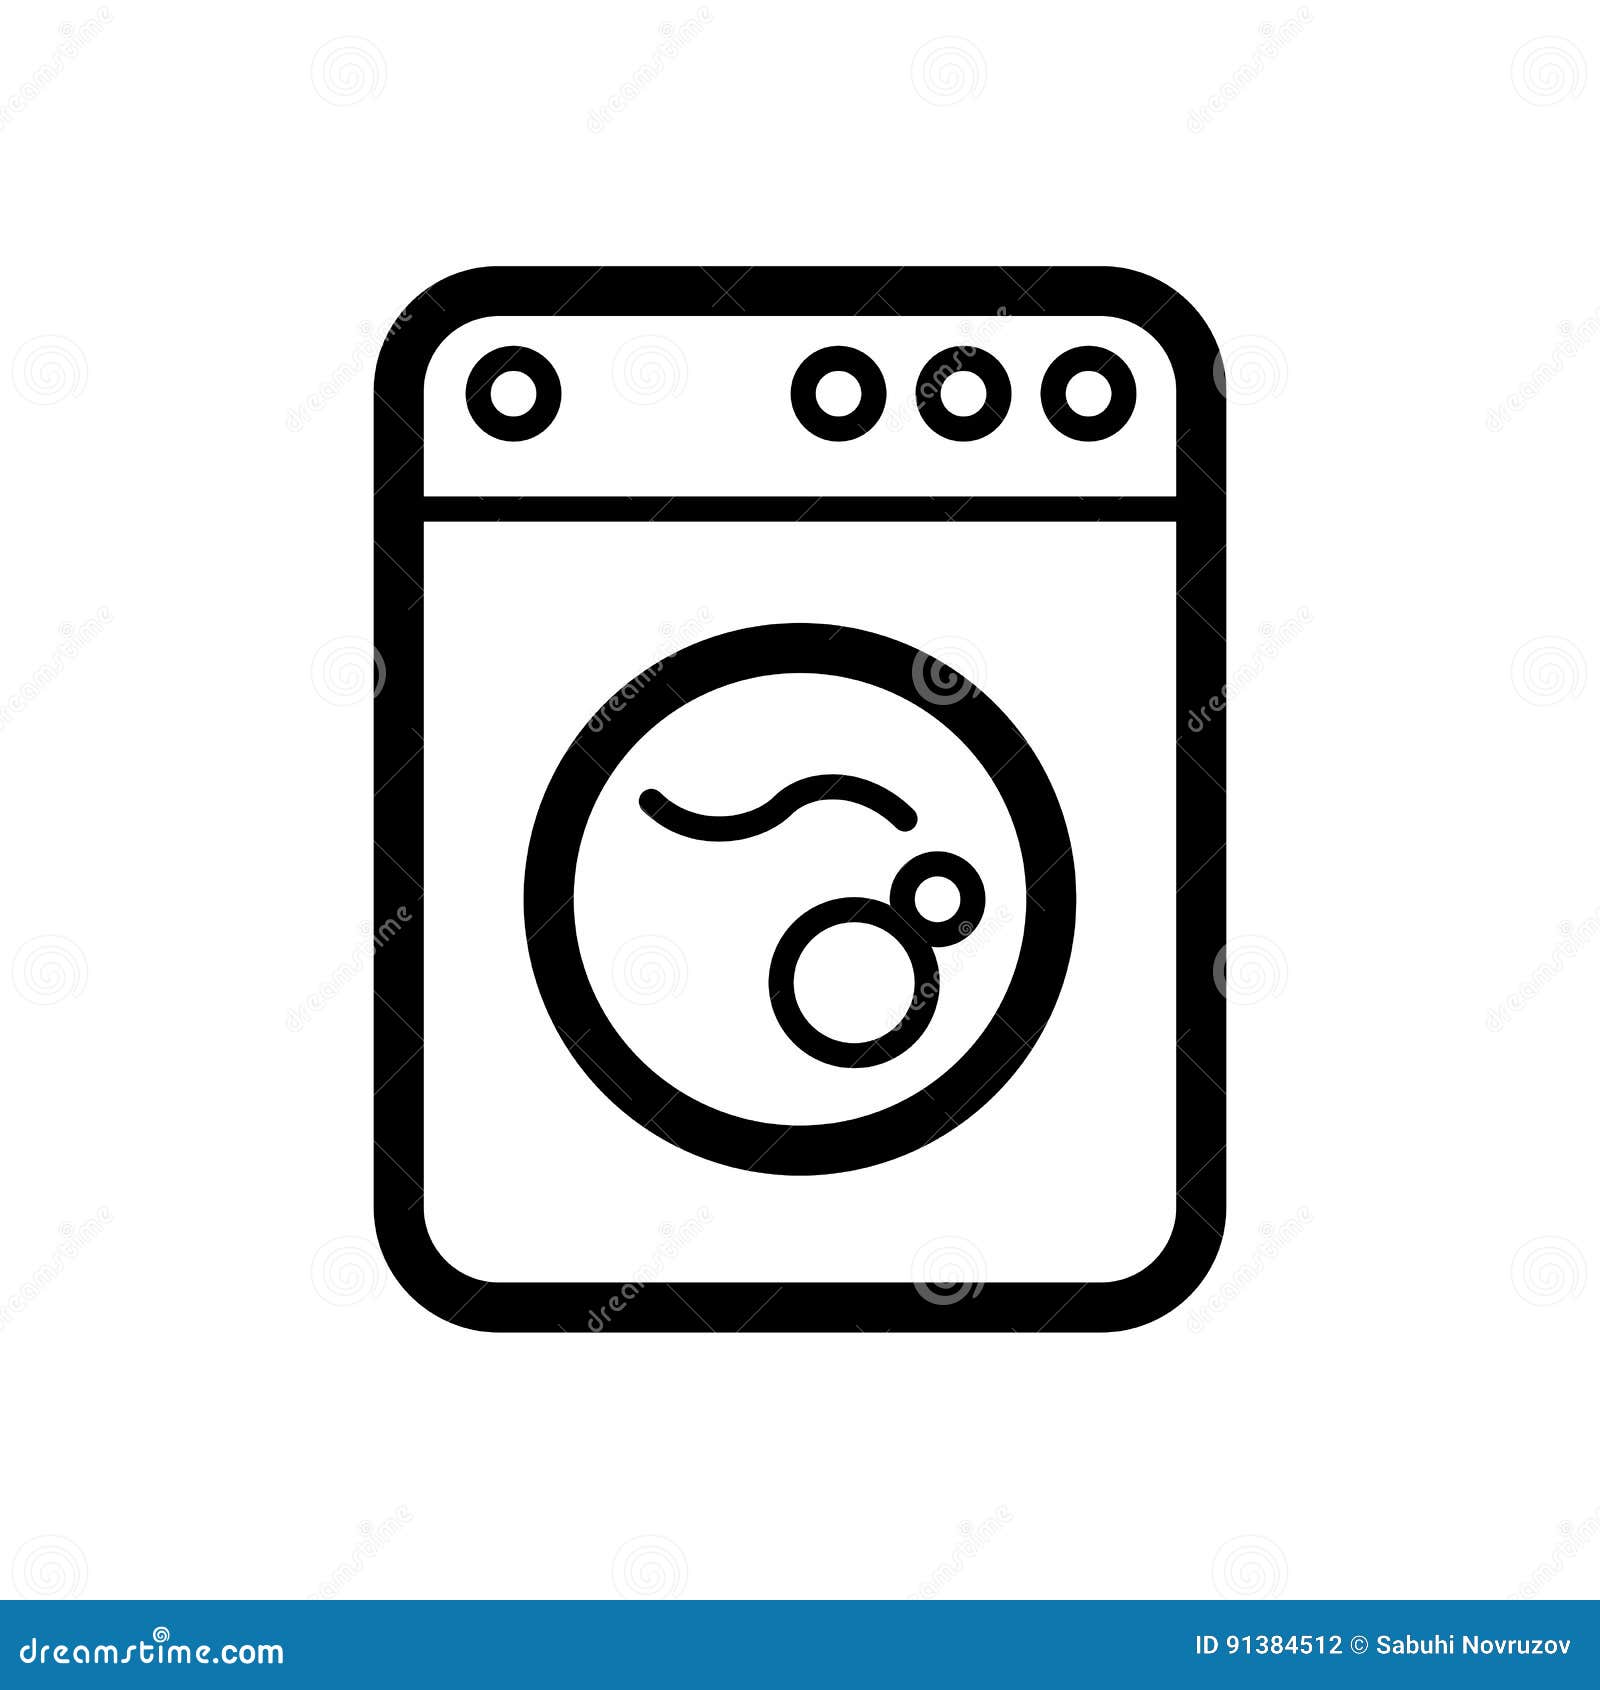 Символ стиральной машины на плане